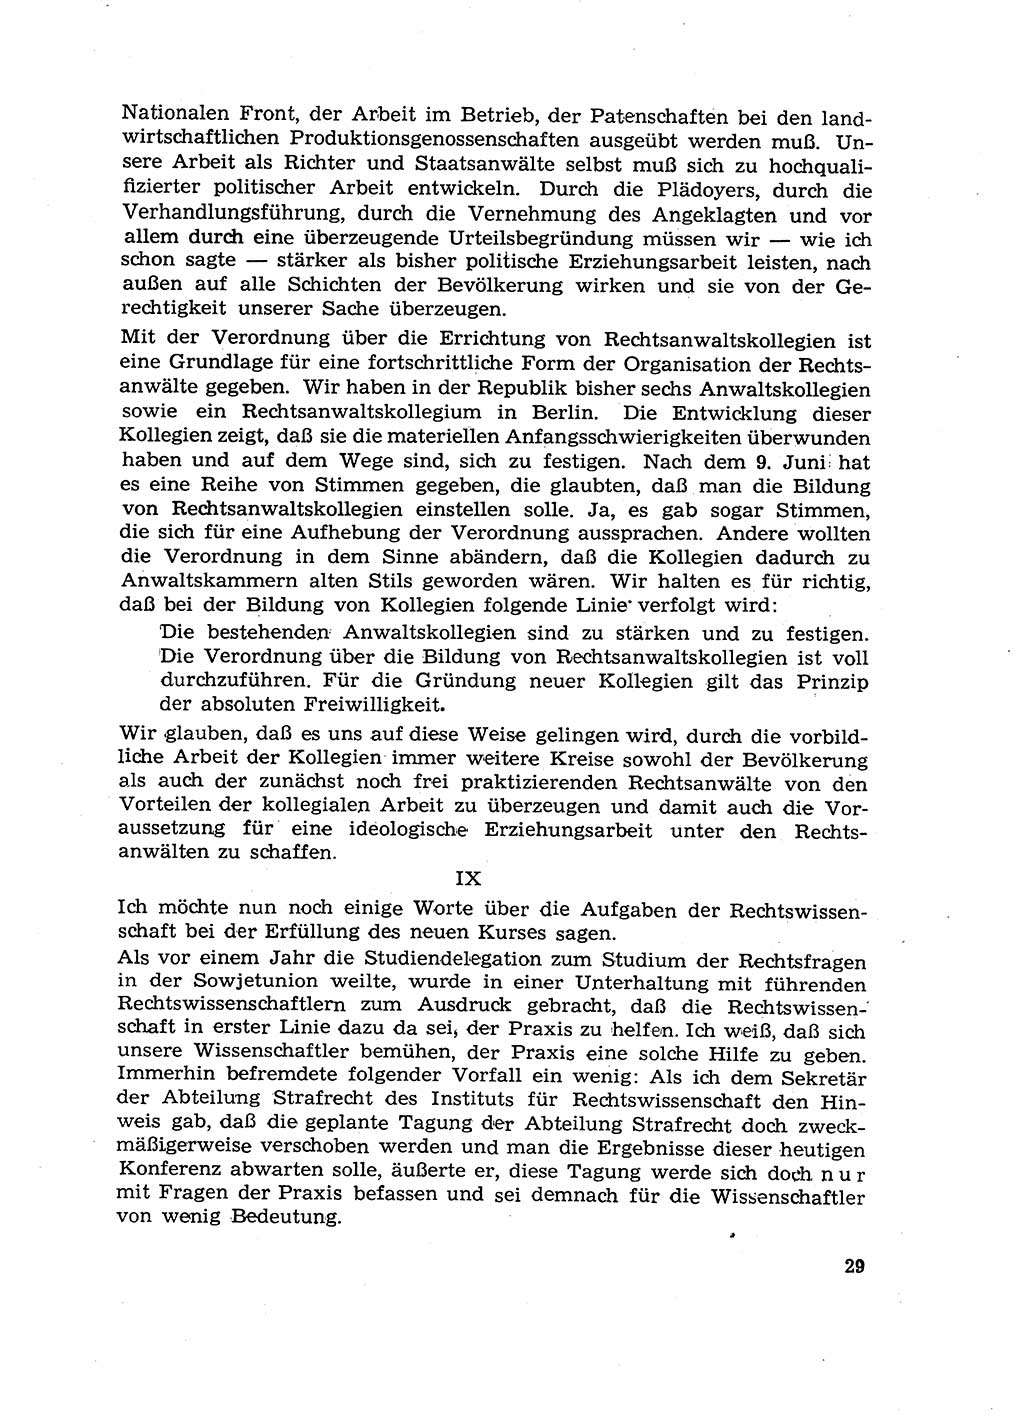 Hauptaufgaben der Justiz [Deutsche Demokratische Republik (DDR)] bei der Durchführung des neuen Kurses 1953, Seite 29 (Hpt.-Aufg. J. DDR 1953, S. 29)